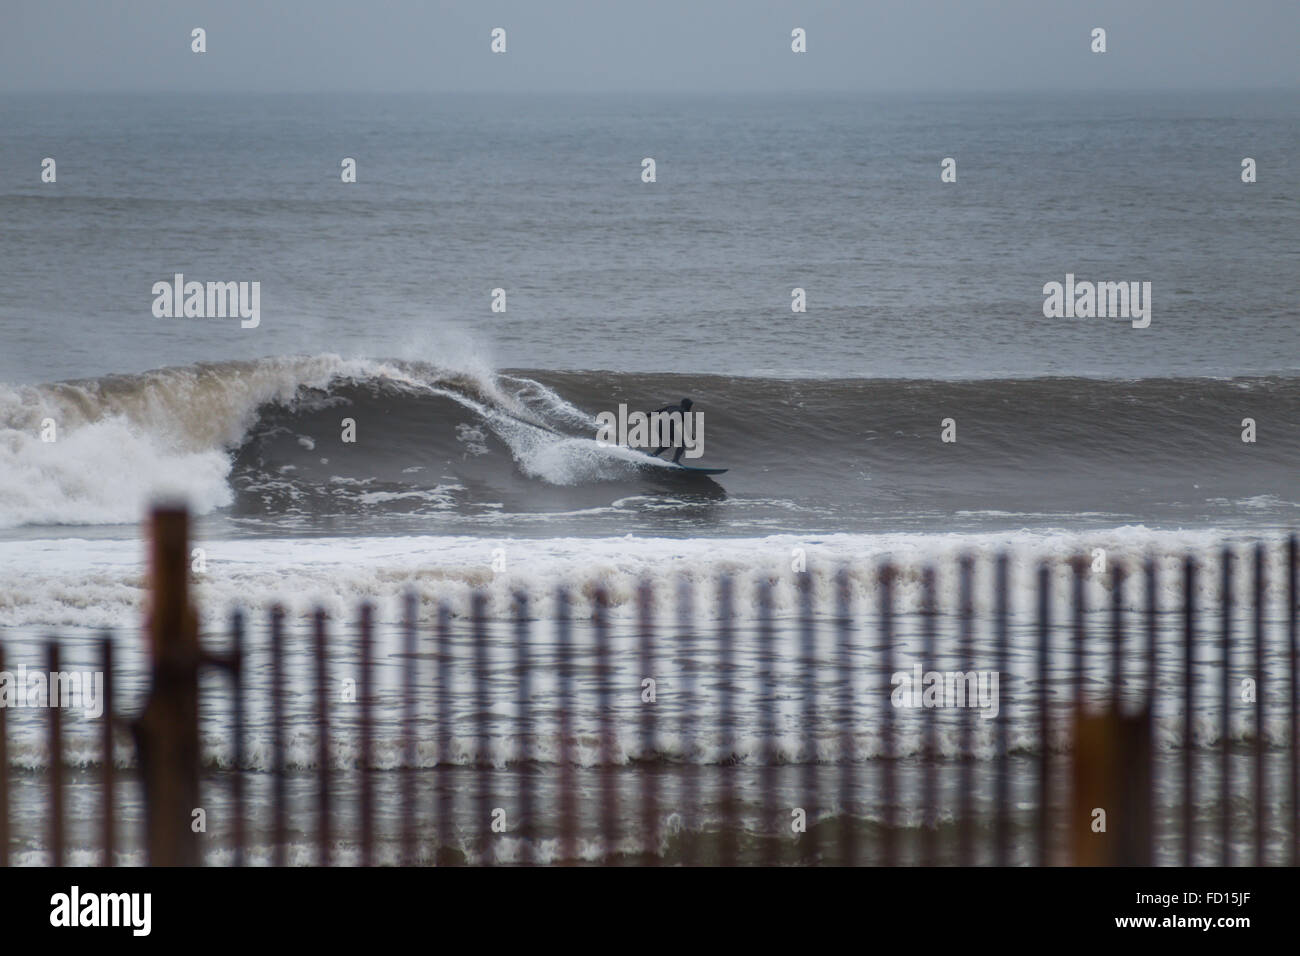 Croisière surfeur sur une vague. Photographié à Rockaway Beach, New York le 29 décembre 2015. Banque D'Images